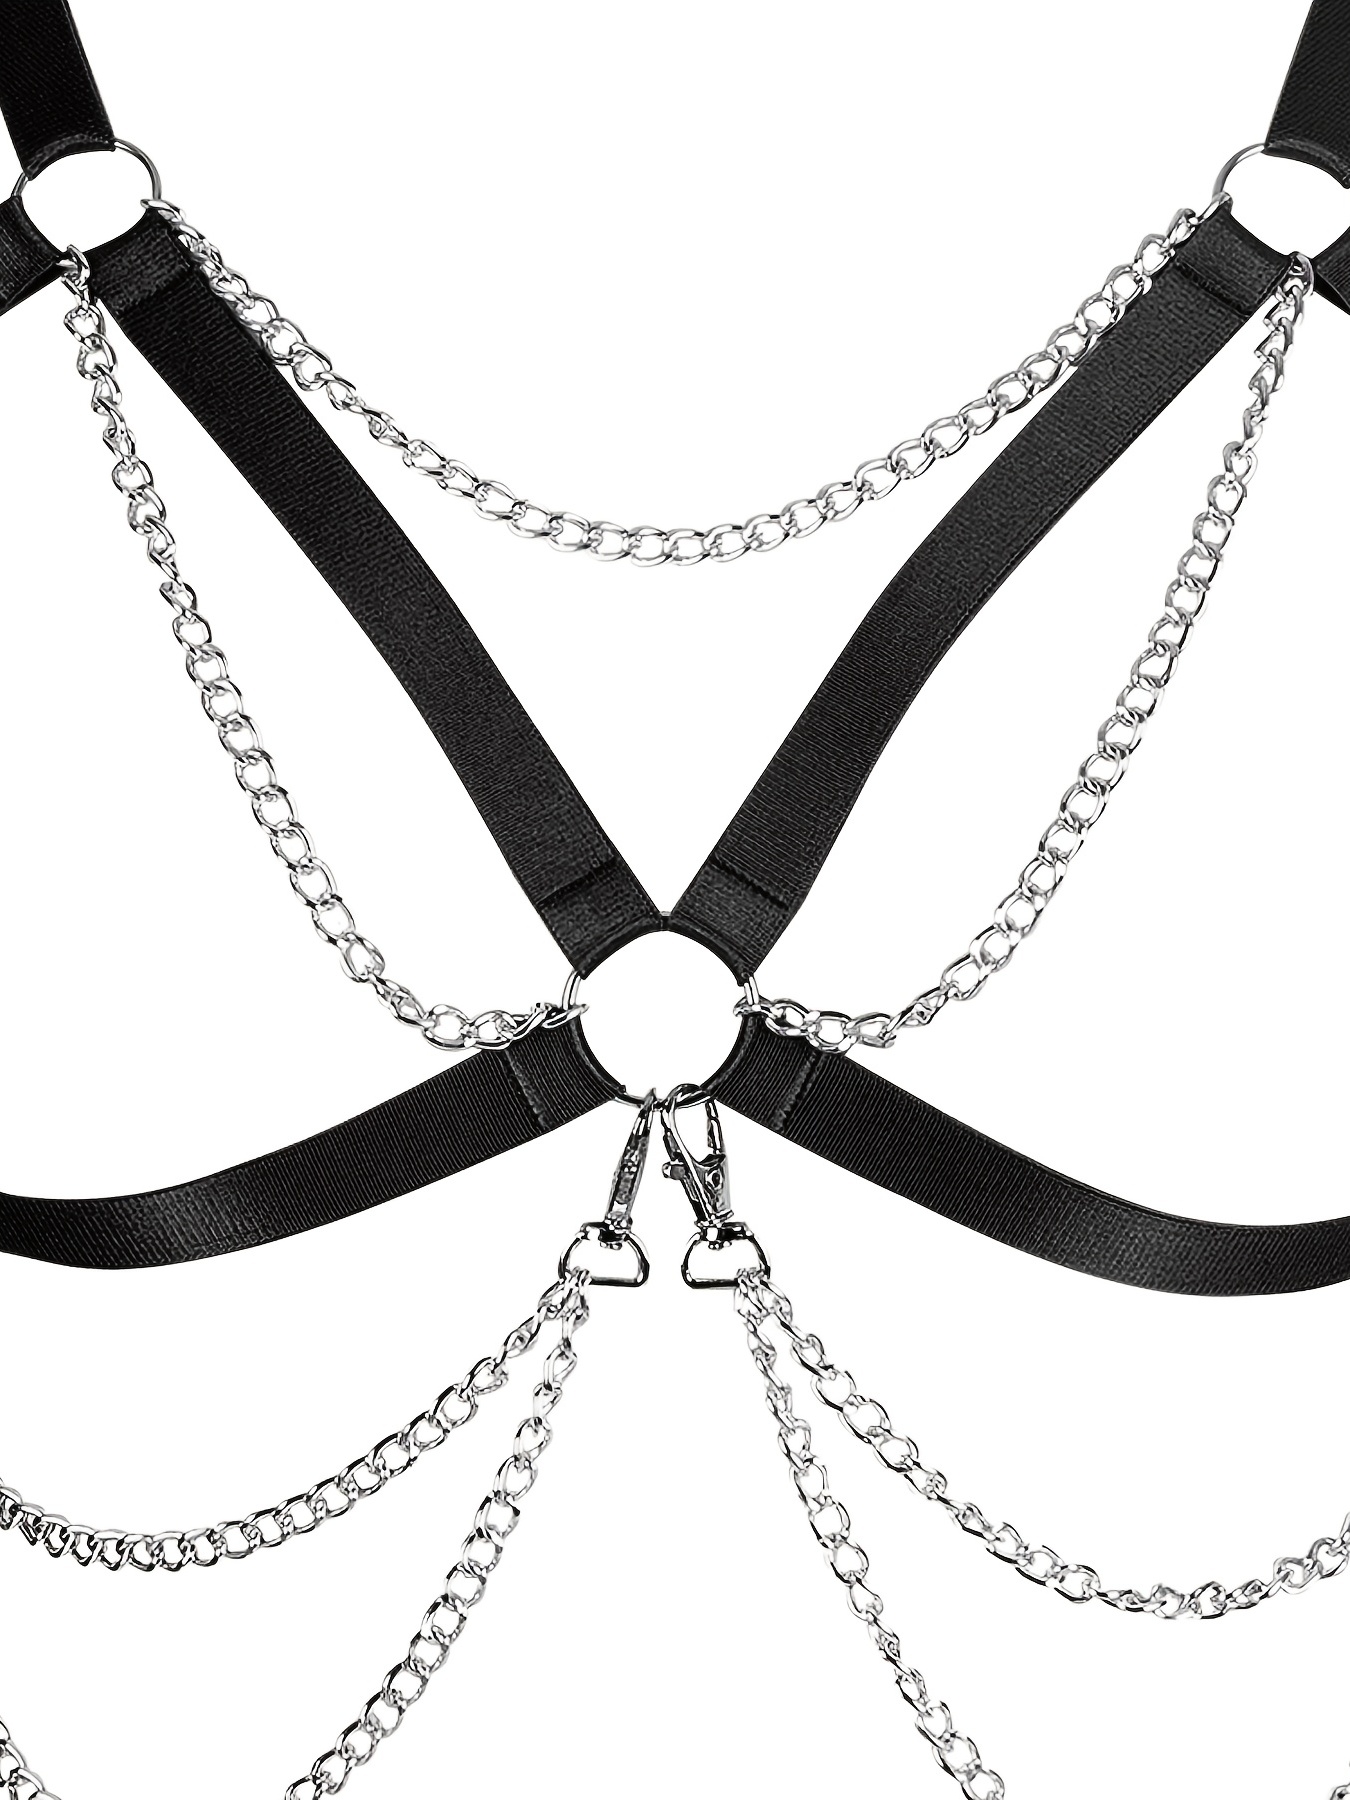 New Bdsm Sexy Women's Leather Chain Bra Harness Underwear Gothic